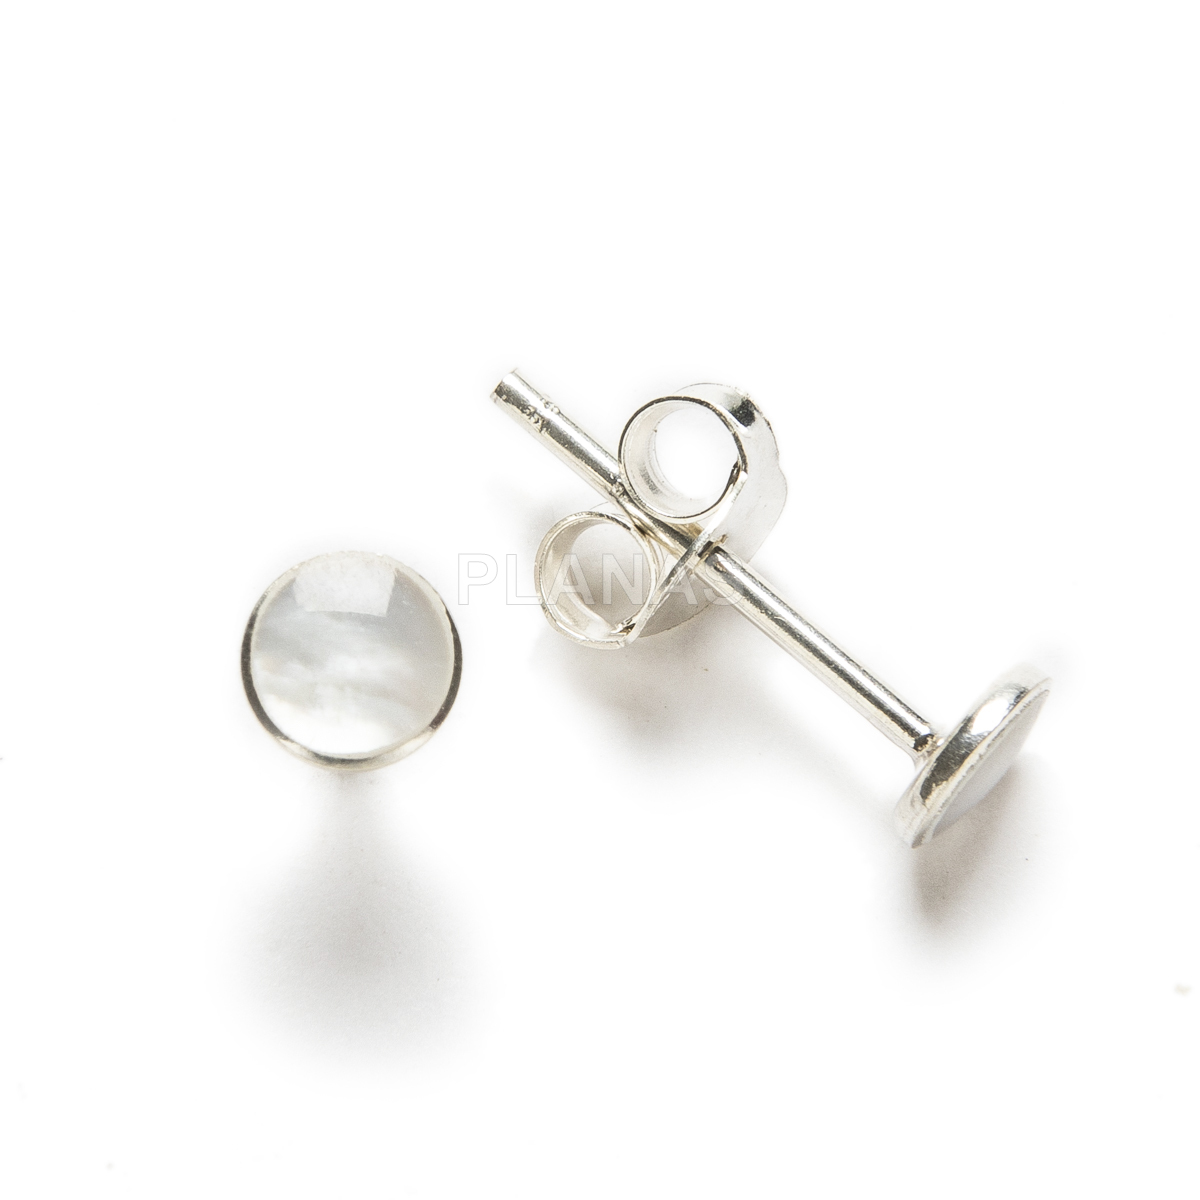 Sterling silver earrings. 4mm.